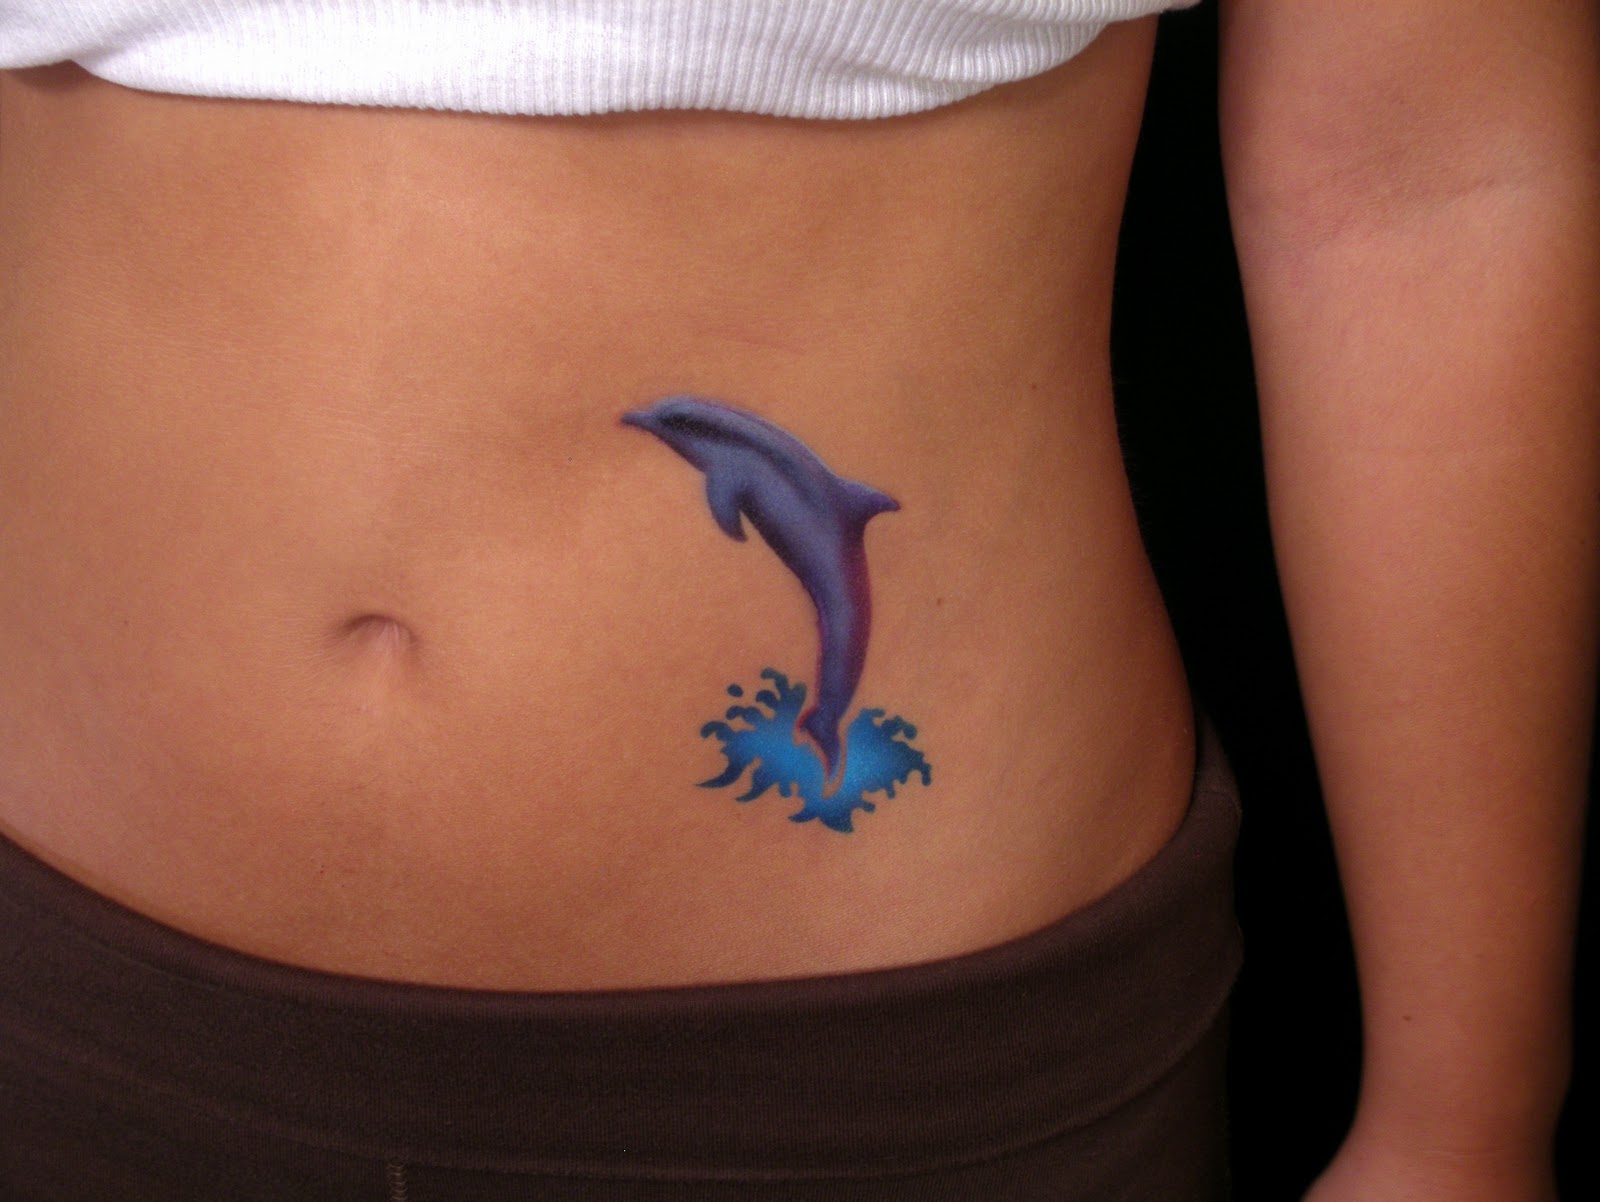 http://4.bp.blogspot.com/-I97V5i3KYNQ/Tn8X0fiSZNI/AAAAAAAABNM/FedAROBmyFs/s1600/dolphin+tattoo+meaning.jpg